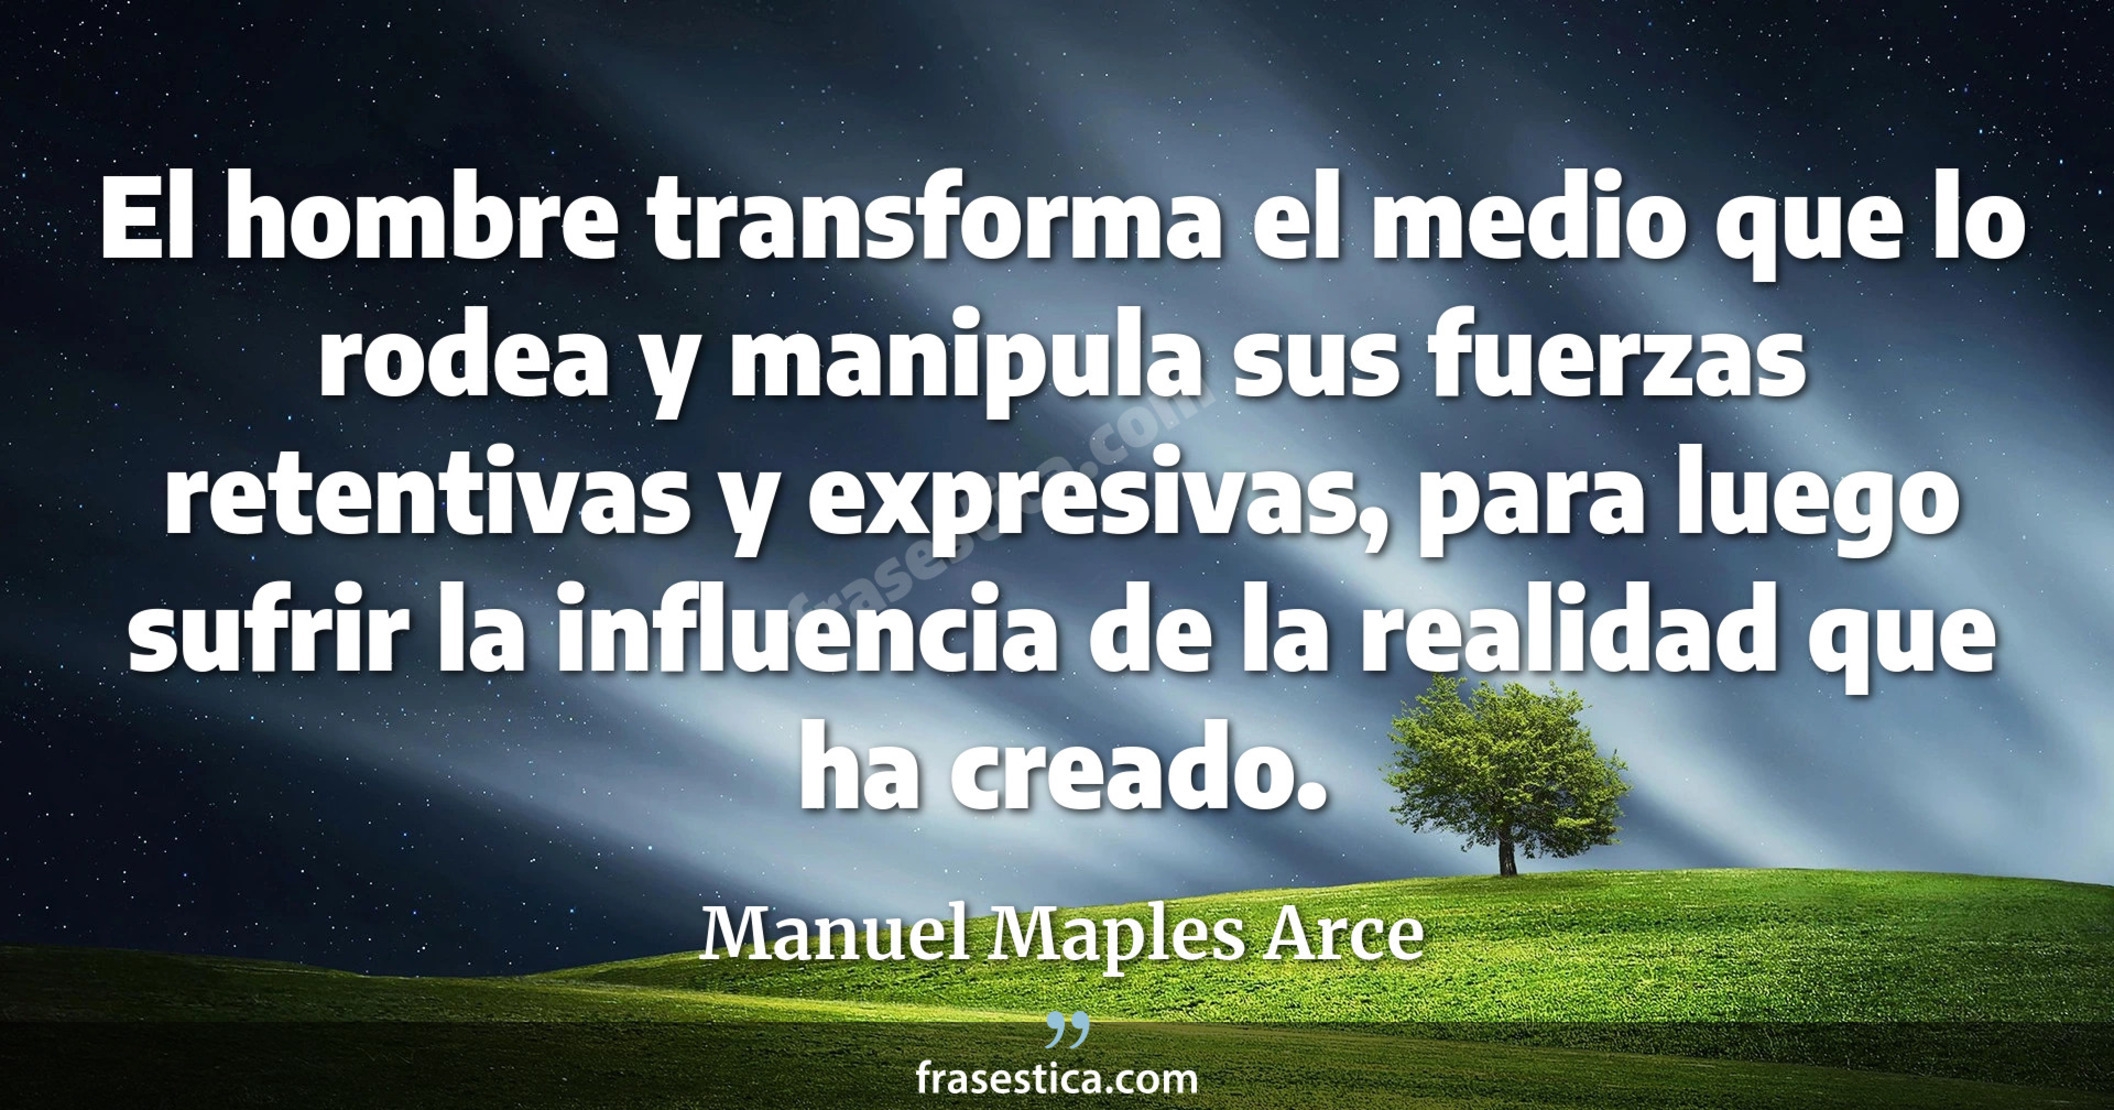 El hombre transforma el medio que lo rodea y manipula sus fuerzas retentivas y expresivas, para luego sufrir la influencia de la realidad que ha creado. - Manuel Maples Arce